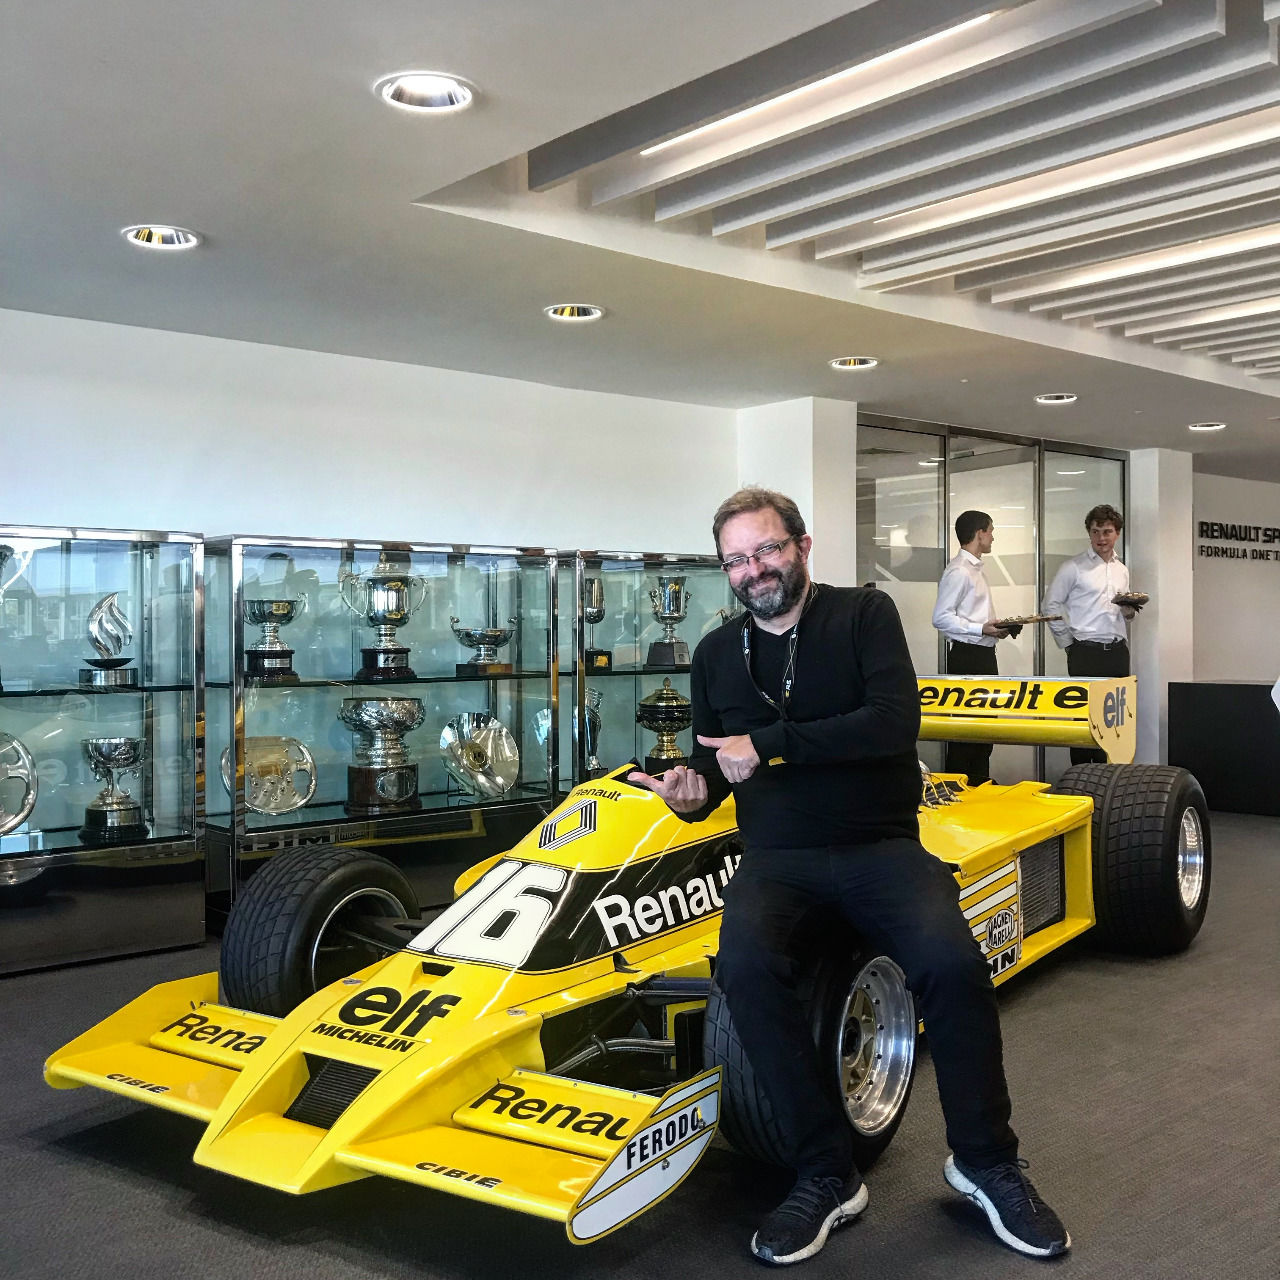 Einer der Boliden der Pionierjahre von Renault, Jean-Pierre Jabouille und seinem Teamkollegen Rene Arnoux steht heute im Eingangsbereich der Renault-F1-Fabrik in Enstone. Als Inspiration, das Erfolg möglich ist, aber auch viel Durchhaltevermögen erfordert.